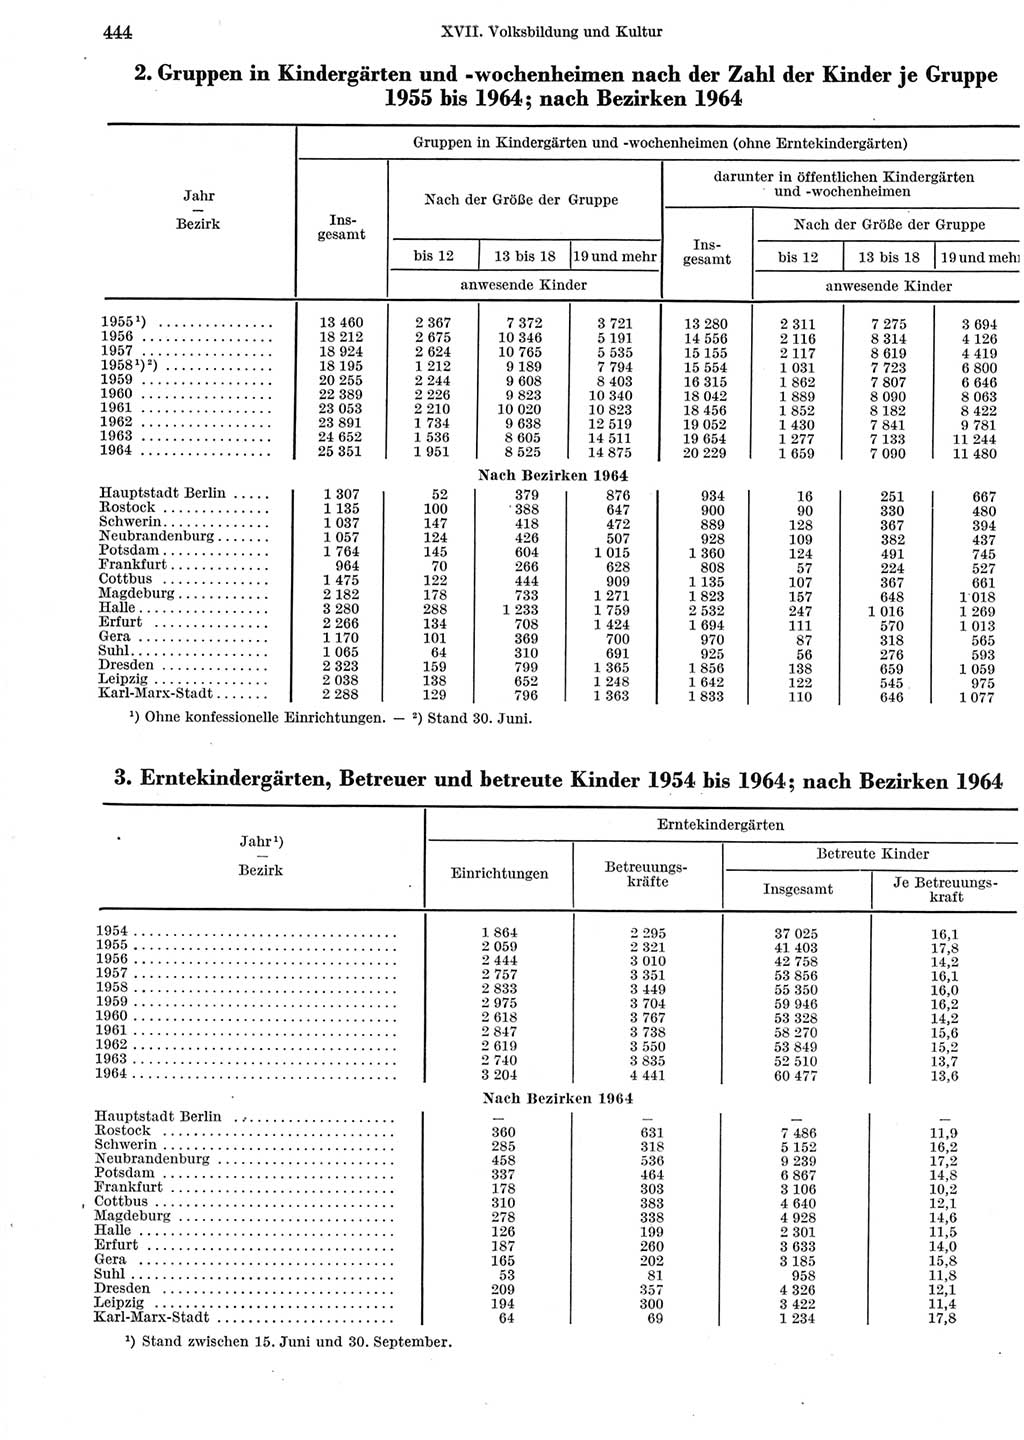 Statistisches Jahrbuch der Deutschen Demokratischen Republik (DDR) 1965, Seite 444 (Stat. Jb. DDR 1965, S. 444)